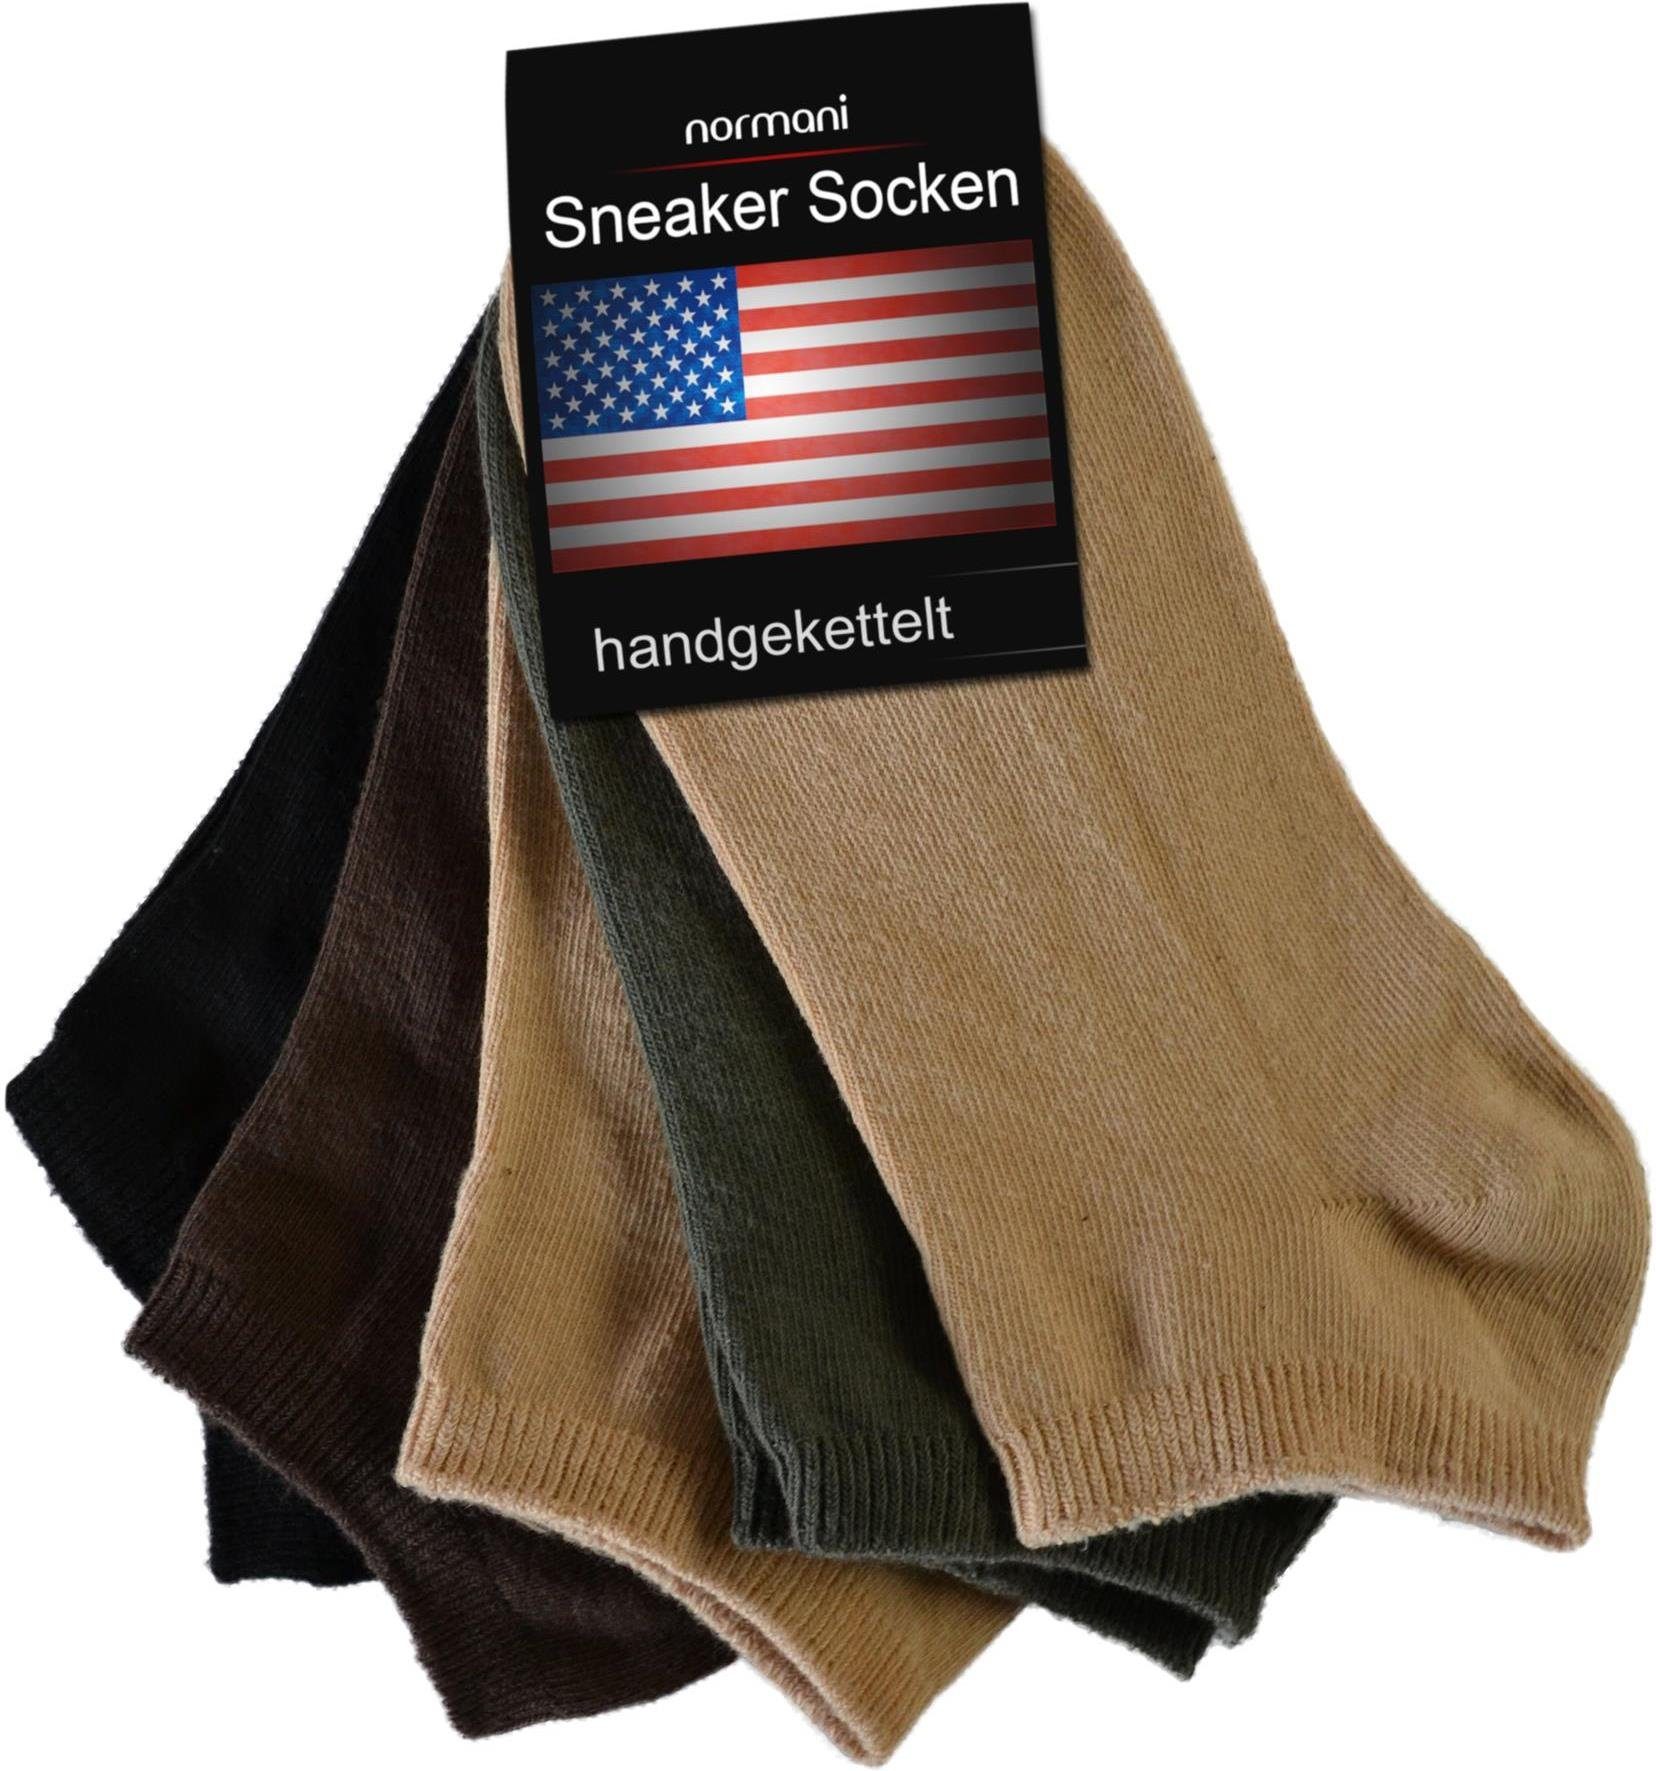 Paar American Sneakersocken Oliv/Beige/Khaki/Braun/Schwarz 15 15 handgekettelte Paar) normani Sneaker Spitze (15er-Set,